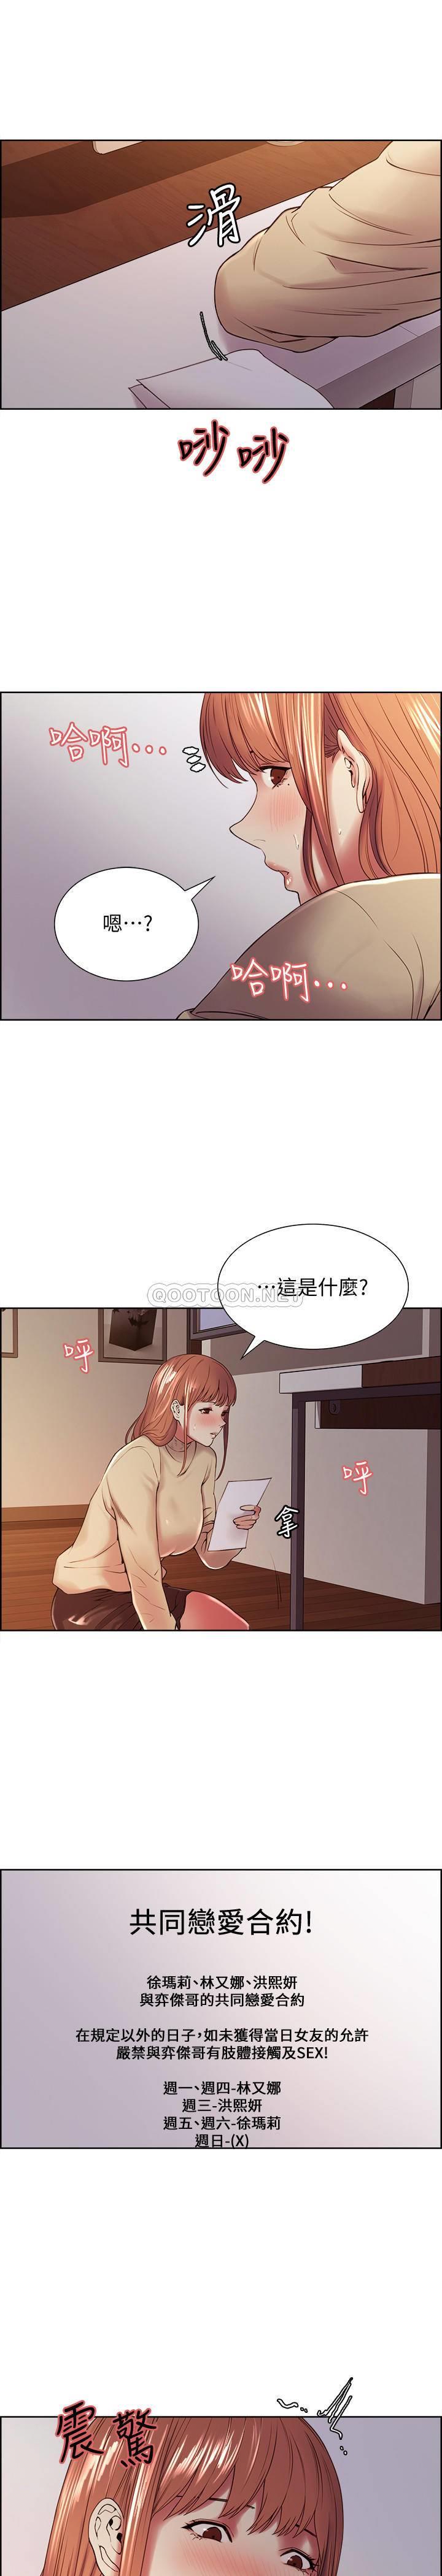 《室友招募中》漫画 第37话 - 我也不输年轻妹子…!